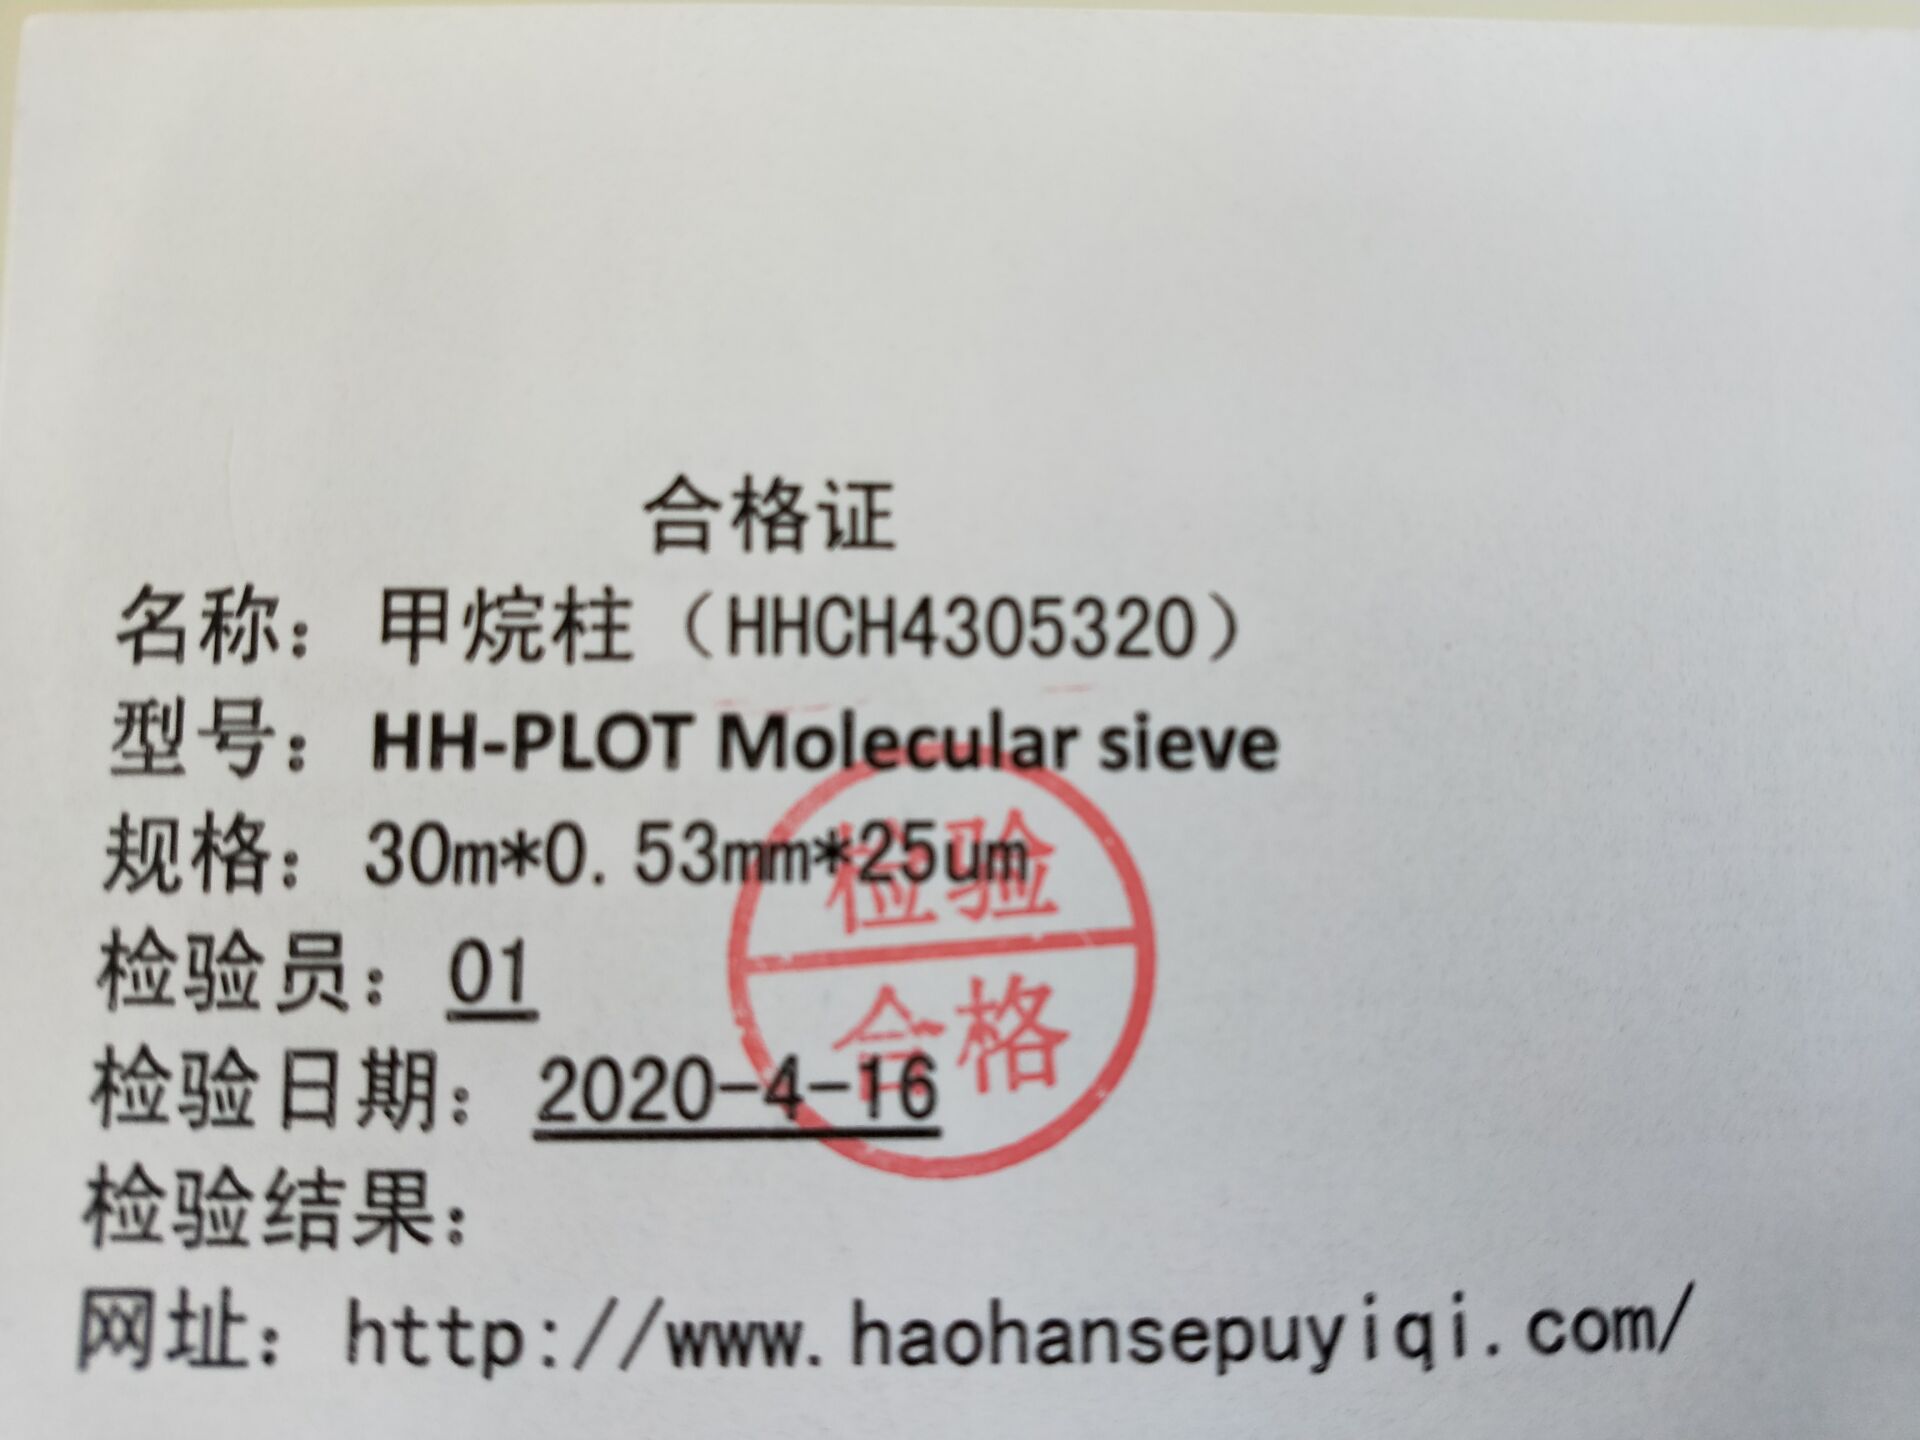 甲烷合格证1111111111111111.jpg